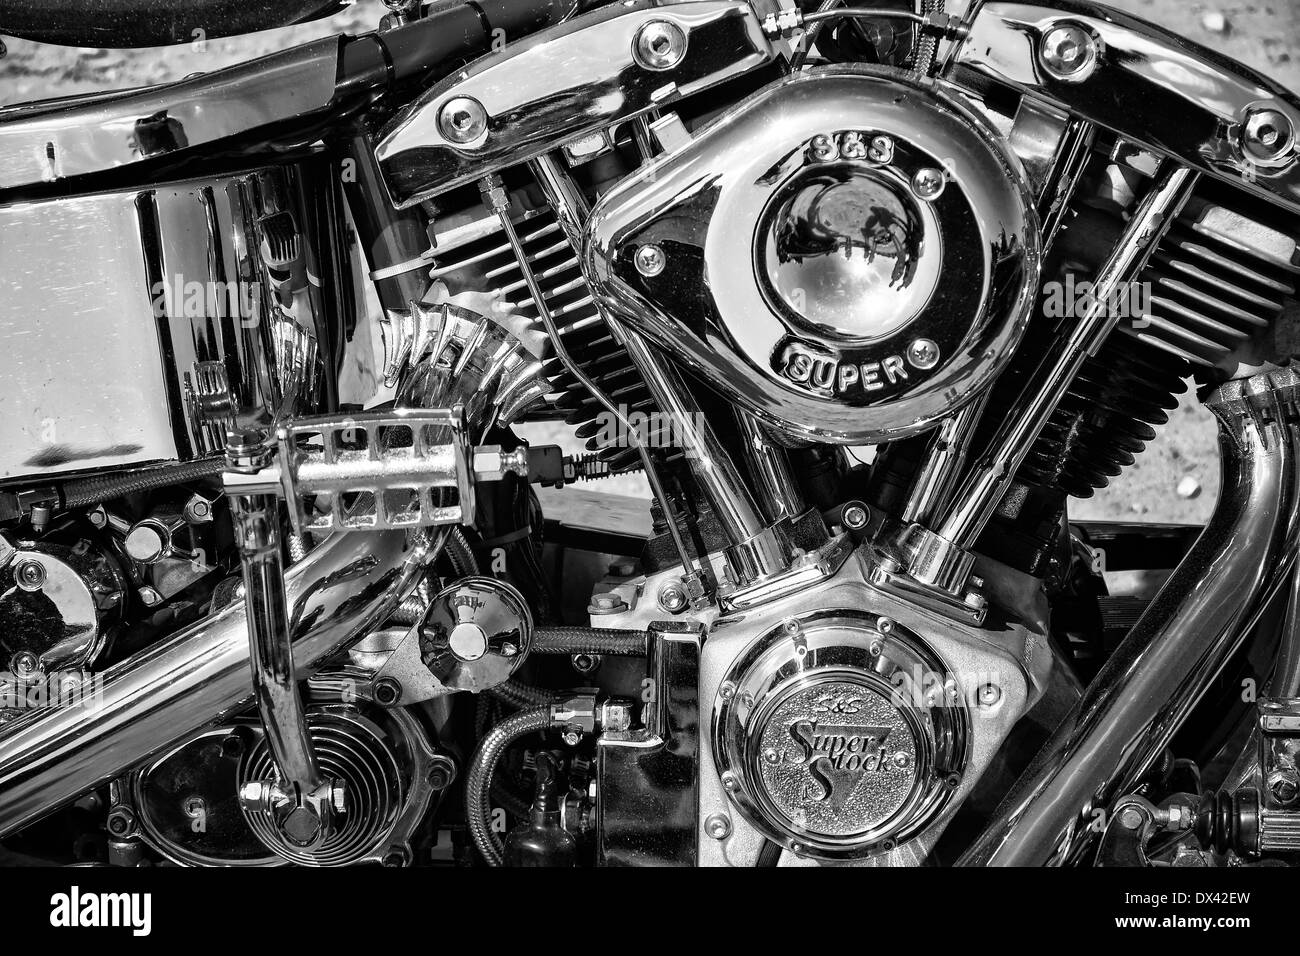 Moteur de moto Harley Davidson Custom Chopper, noir et blanc Banque D'Images